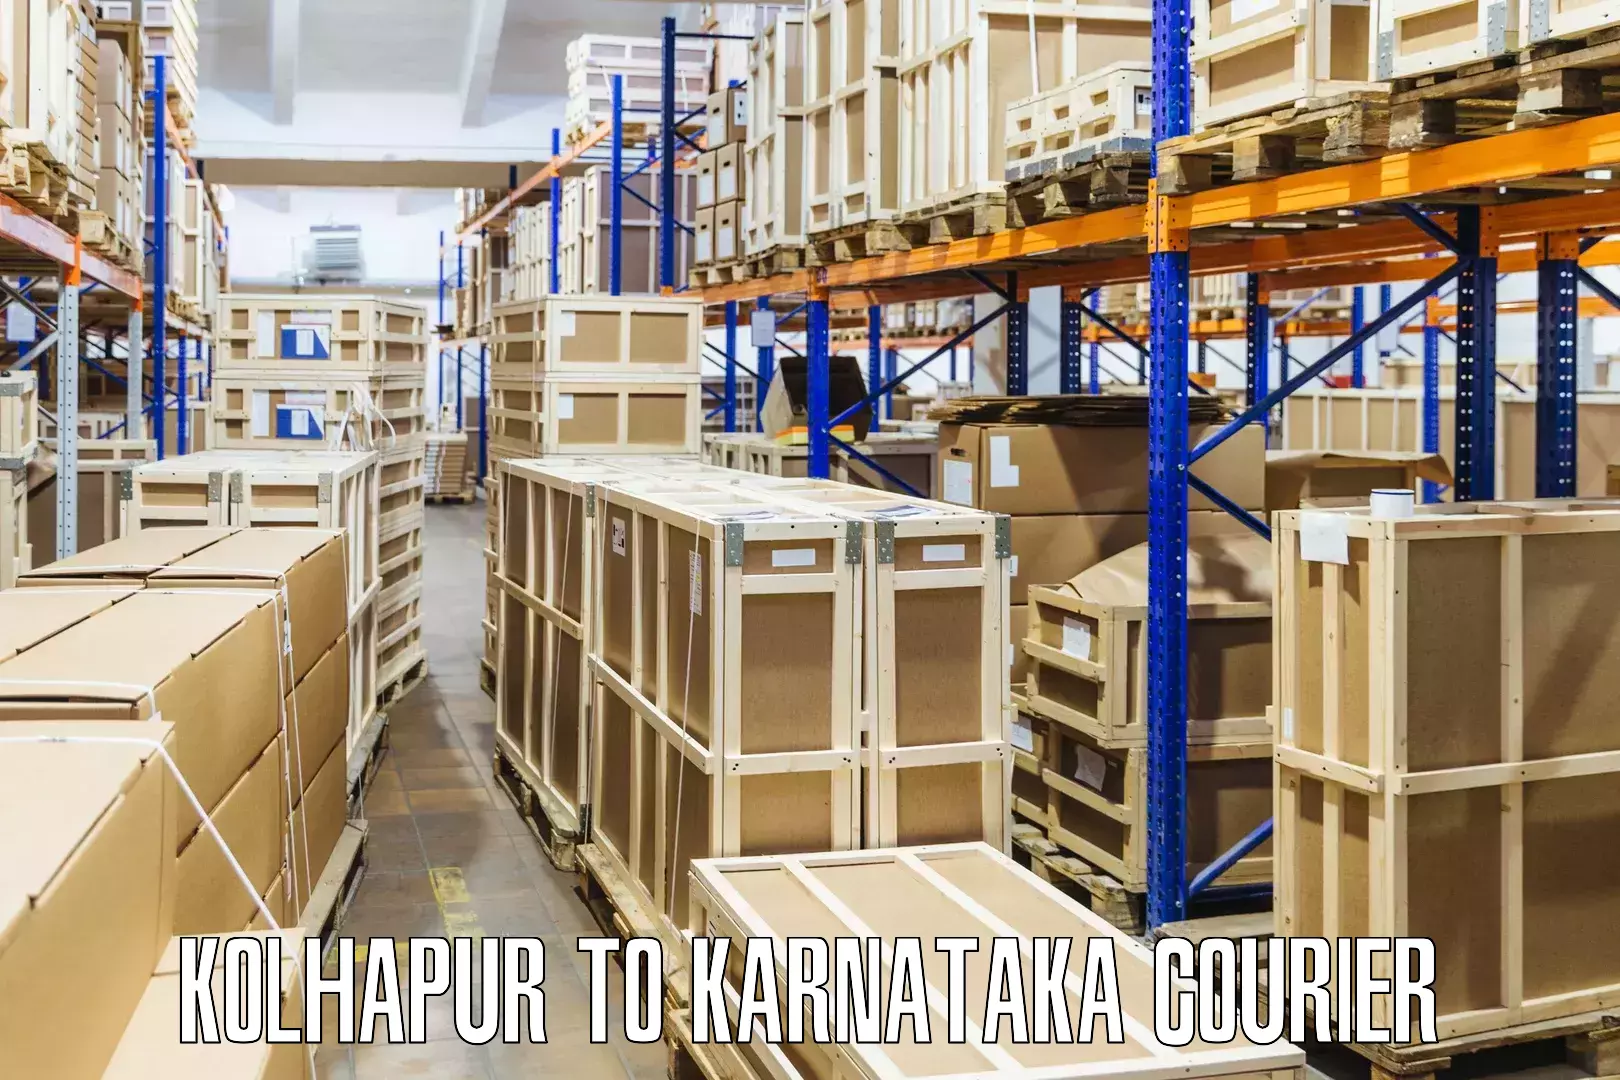 E-commerce fulfillment Kolhapur to Bangalore